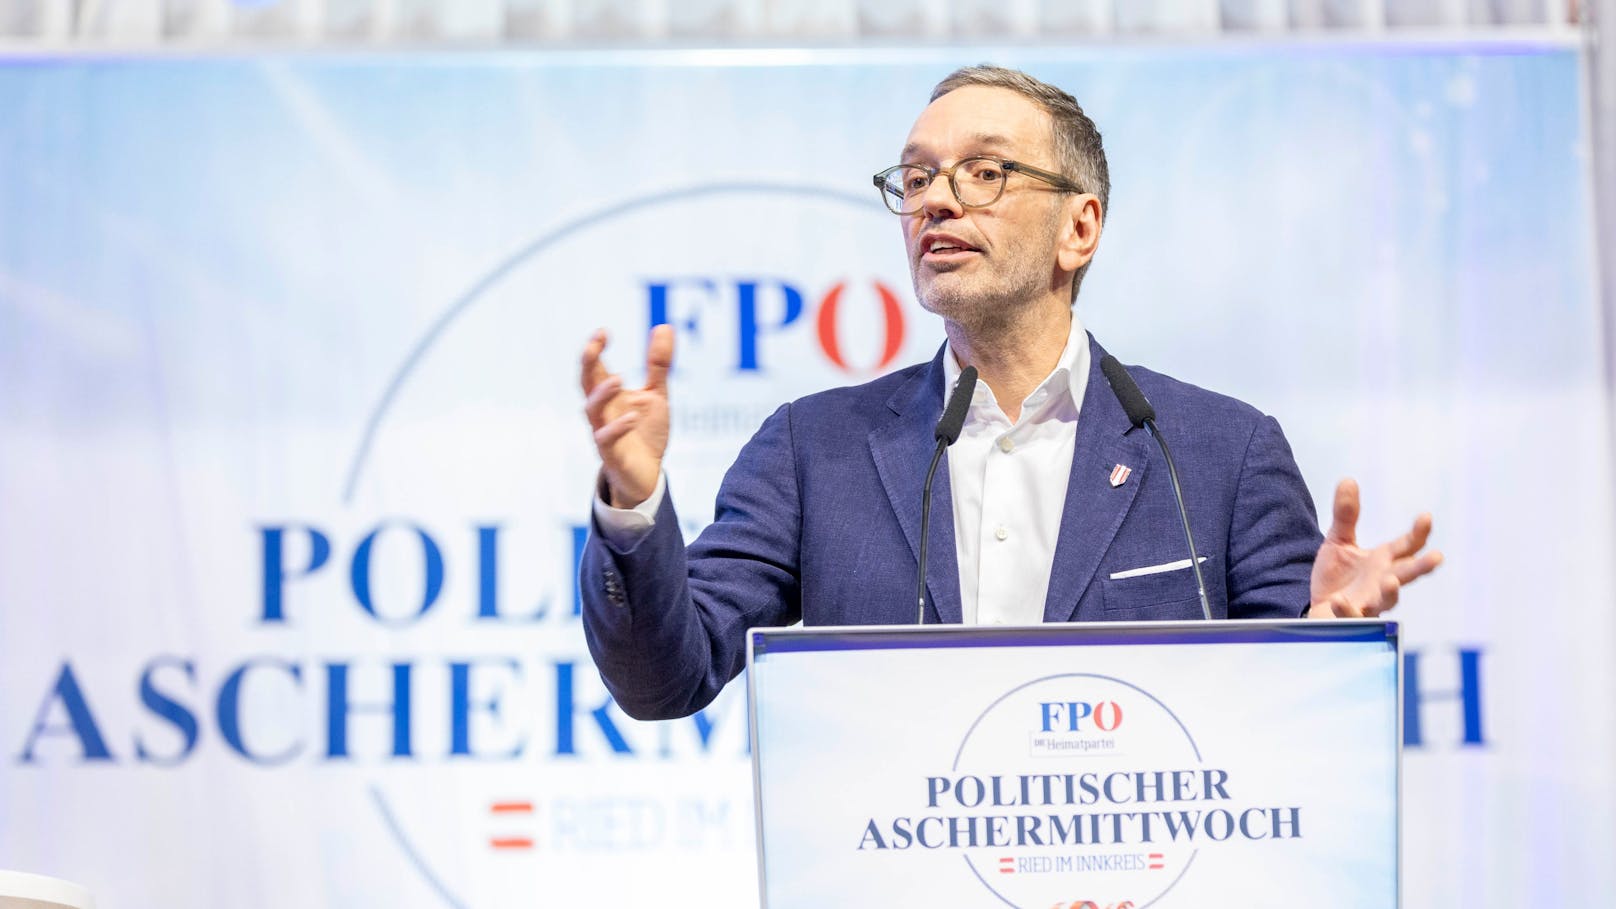 FPÖ-Chef Kickl zeigt "exklusive Luxus-Aktentasche"